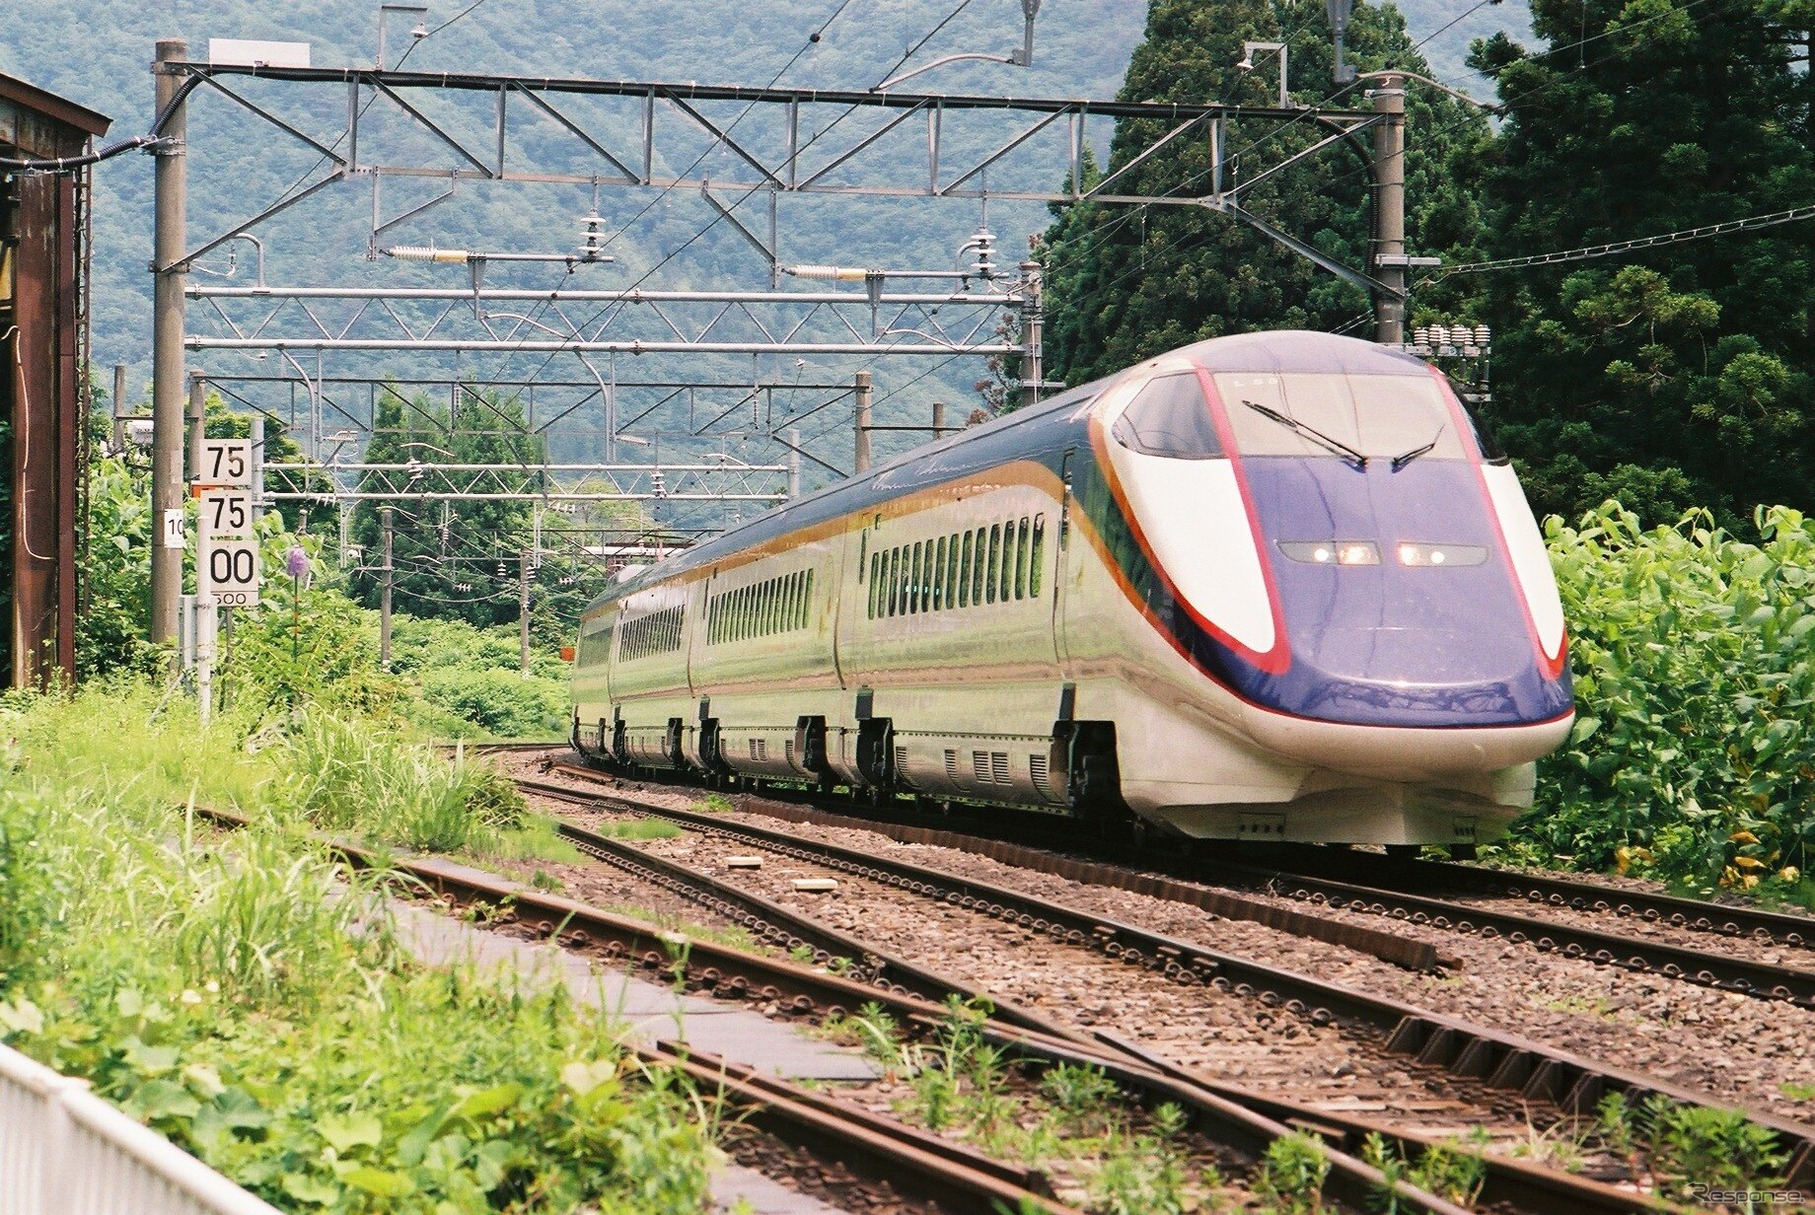 1月25日は終日運休となった山形新幹線。